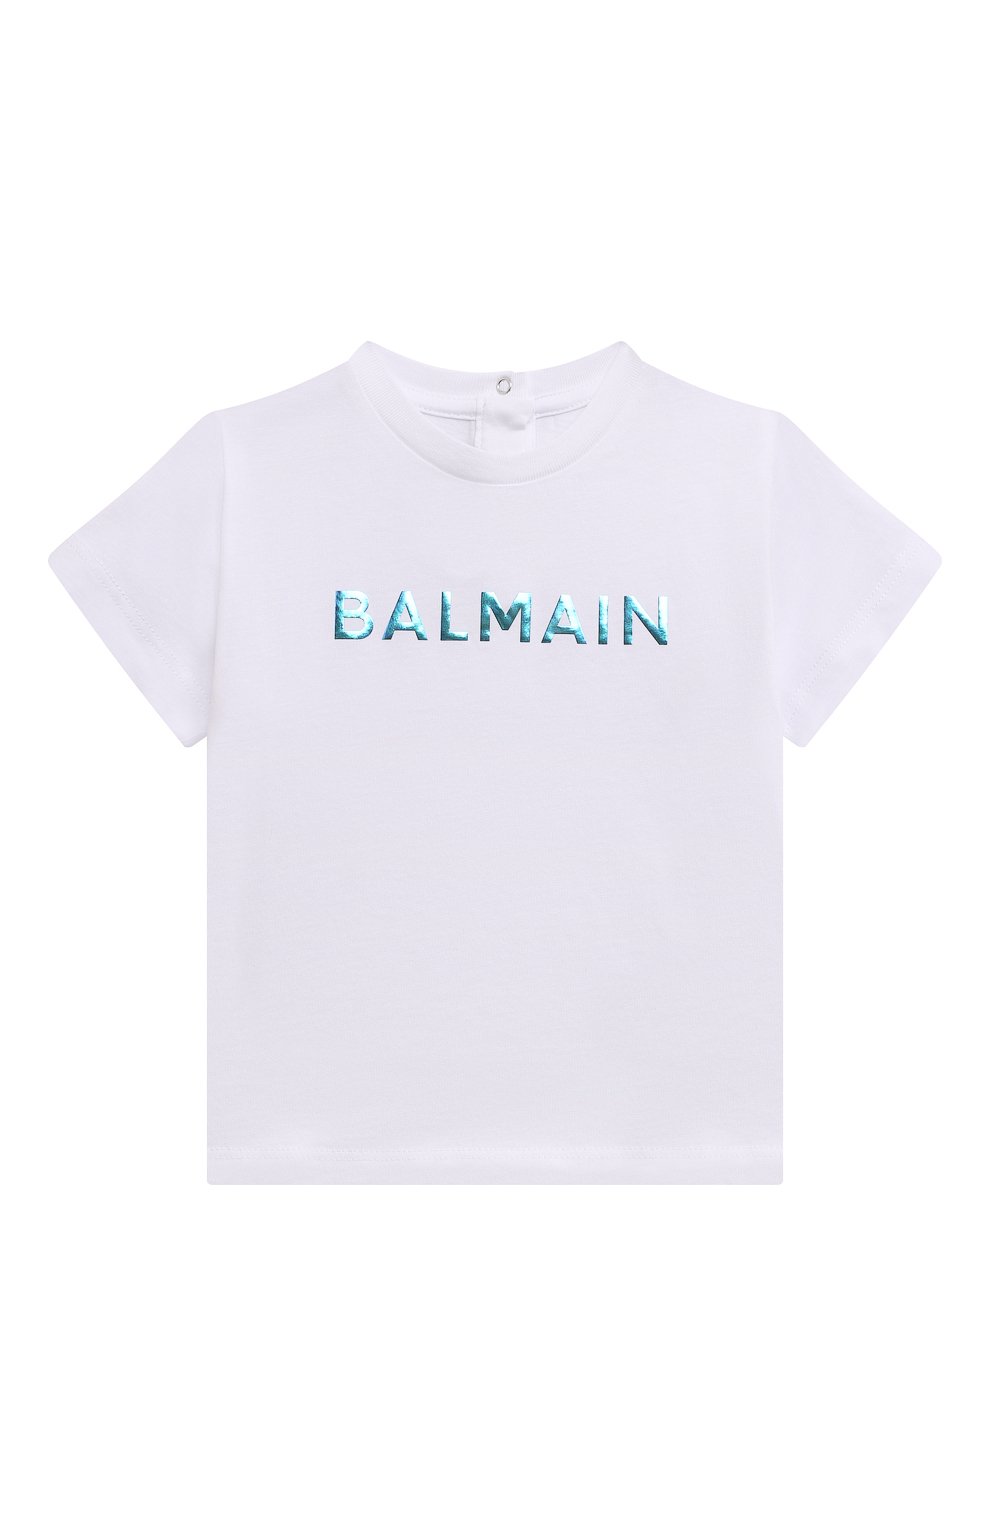 Топы Balmain, Хлопковая футболка Balmain, Португалия, Белый, Хлопок: 100%;, 13331711  - купить